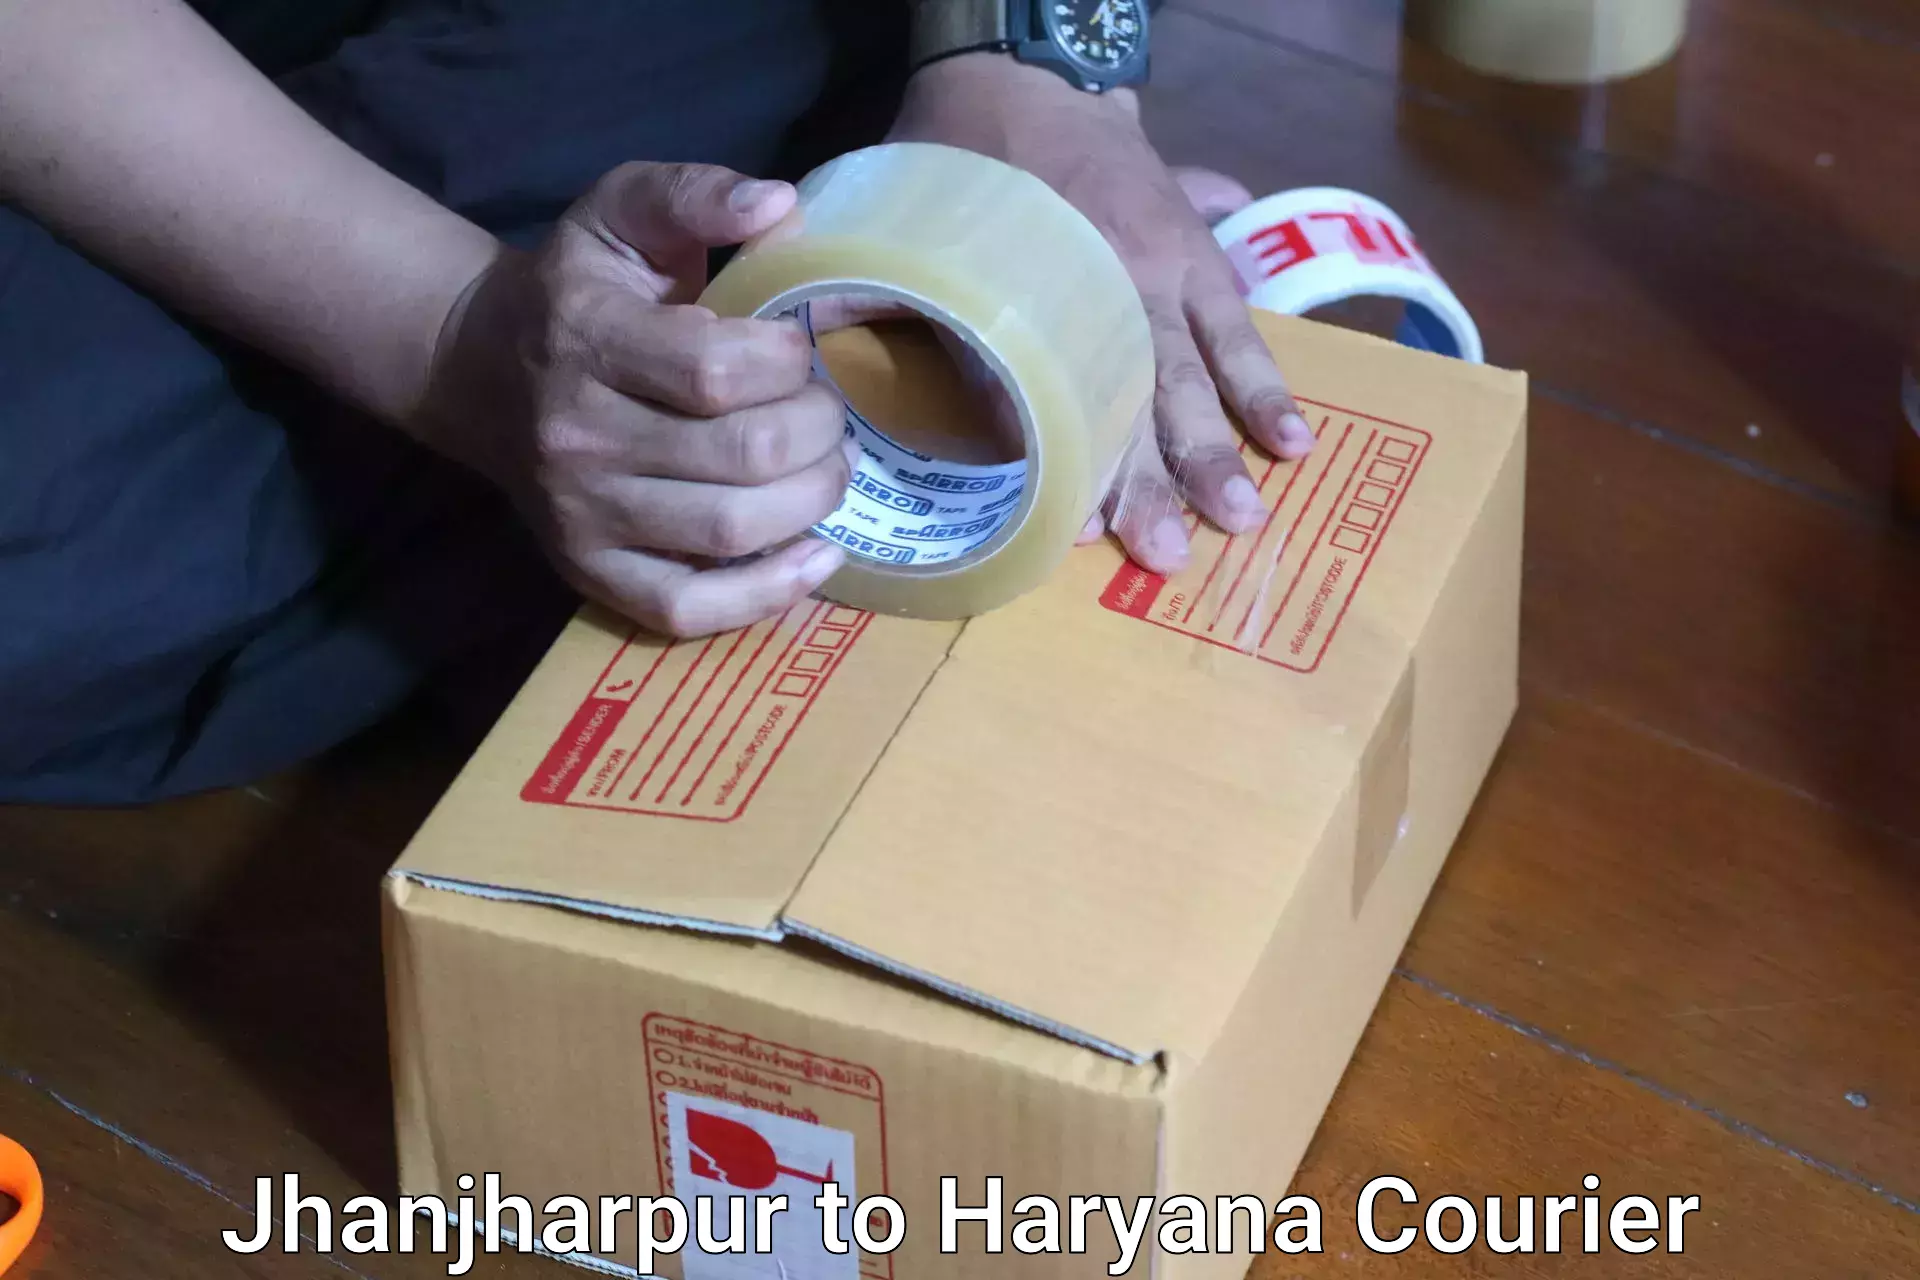 Luggage transfer service Jhanjharpur to Bilaspur Haryana